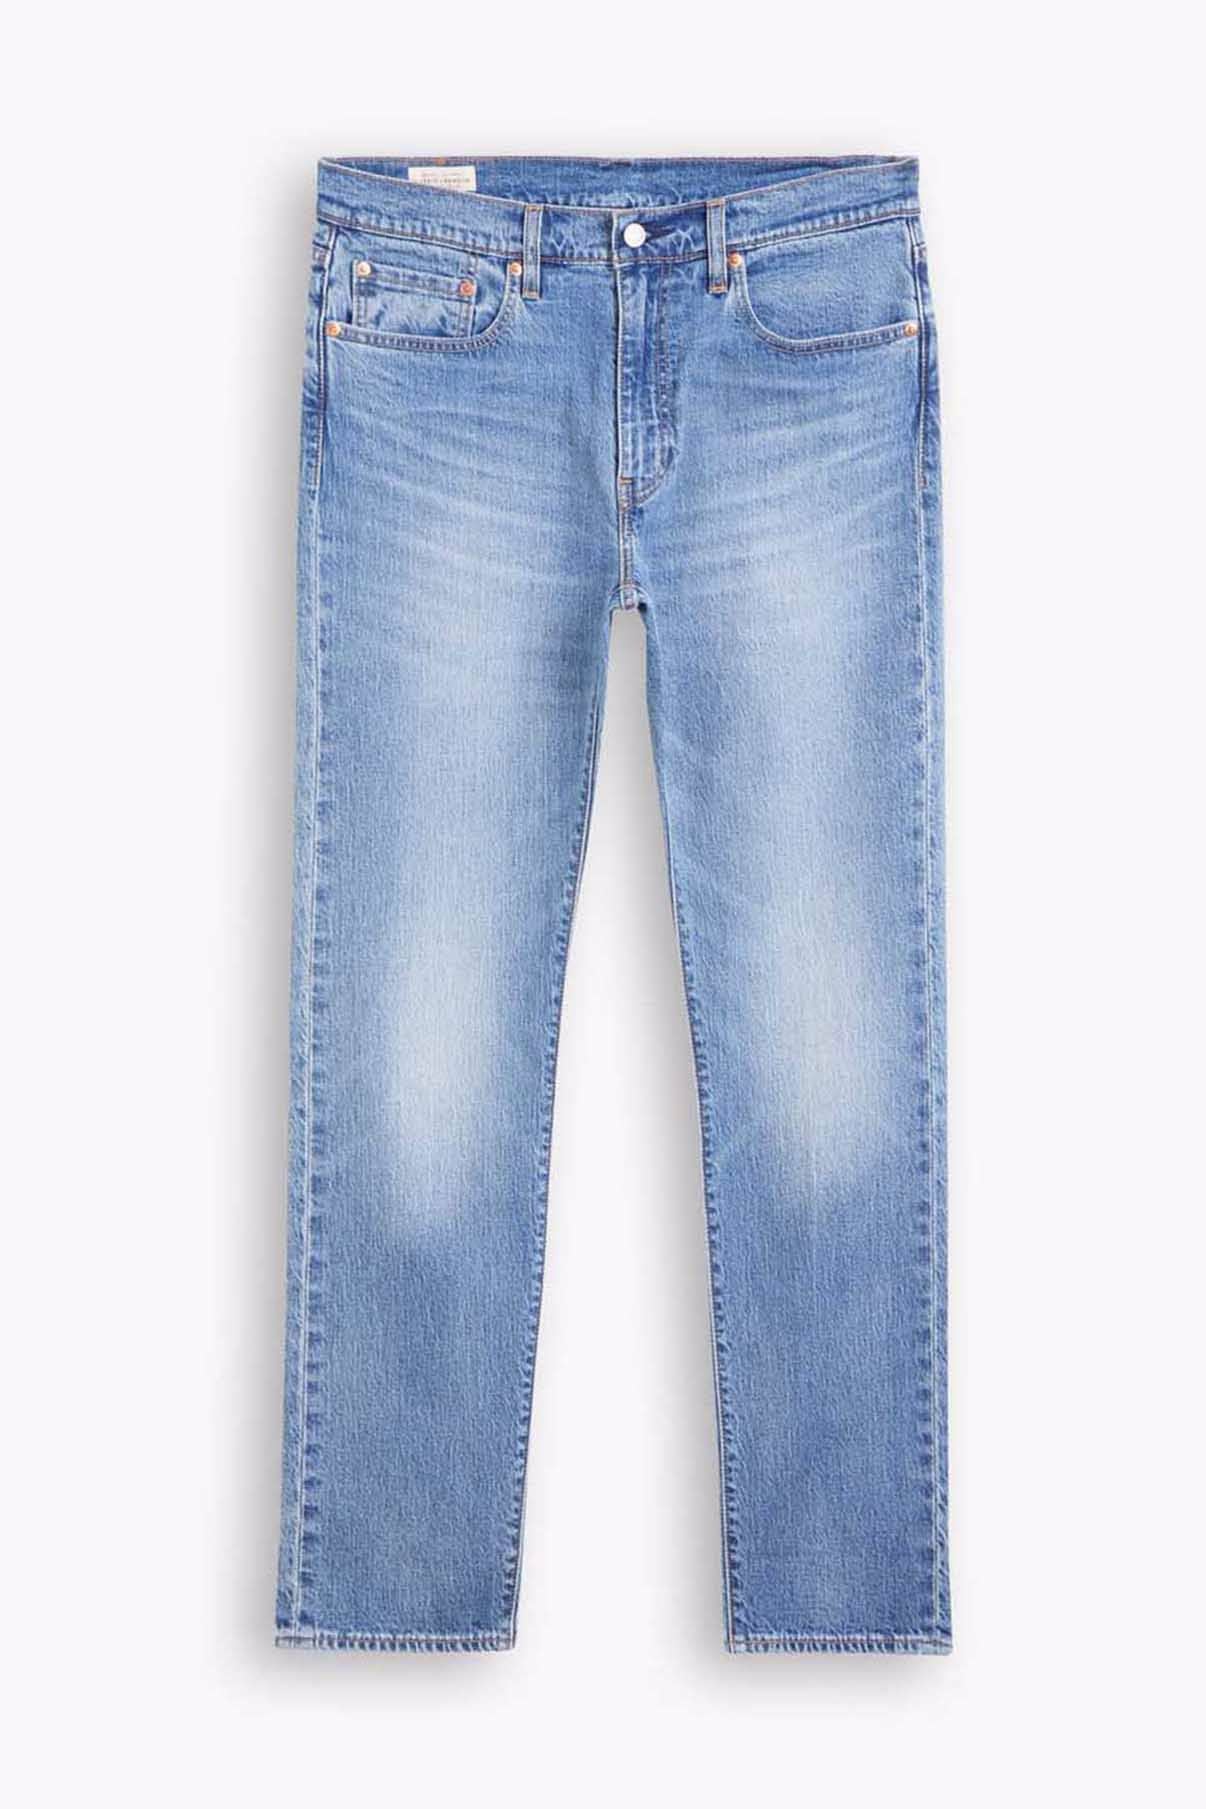 LEVIS MEN Jeans 502 Taper Medium Indigo